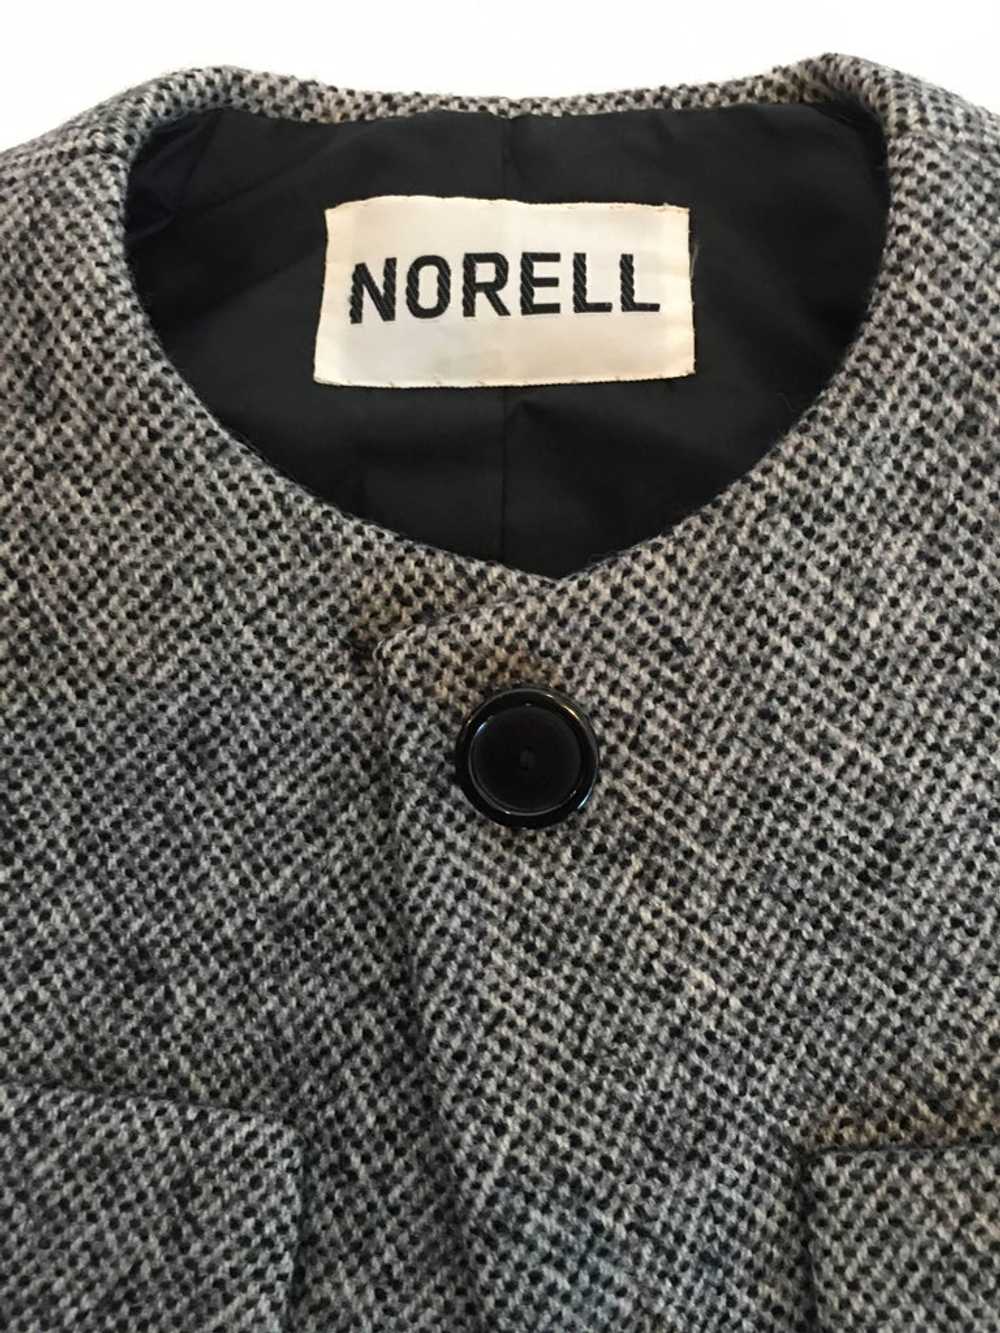 Norell Vintage 1960's Tweed Skirt Suit - image 7